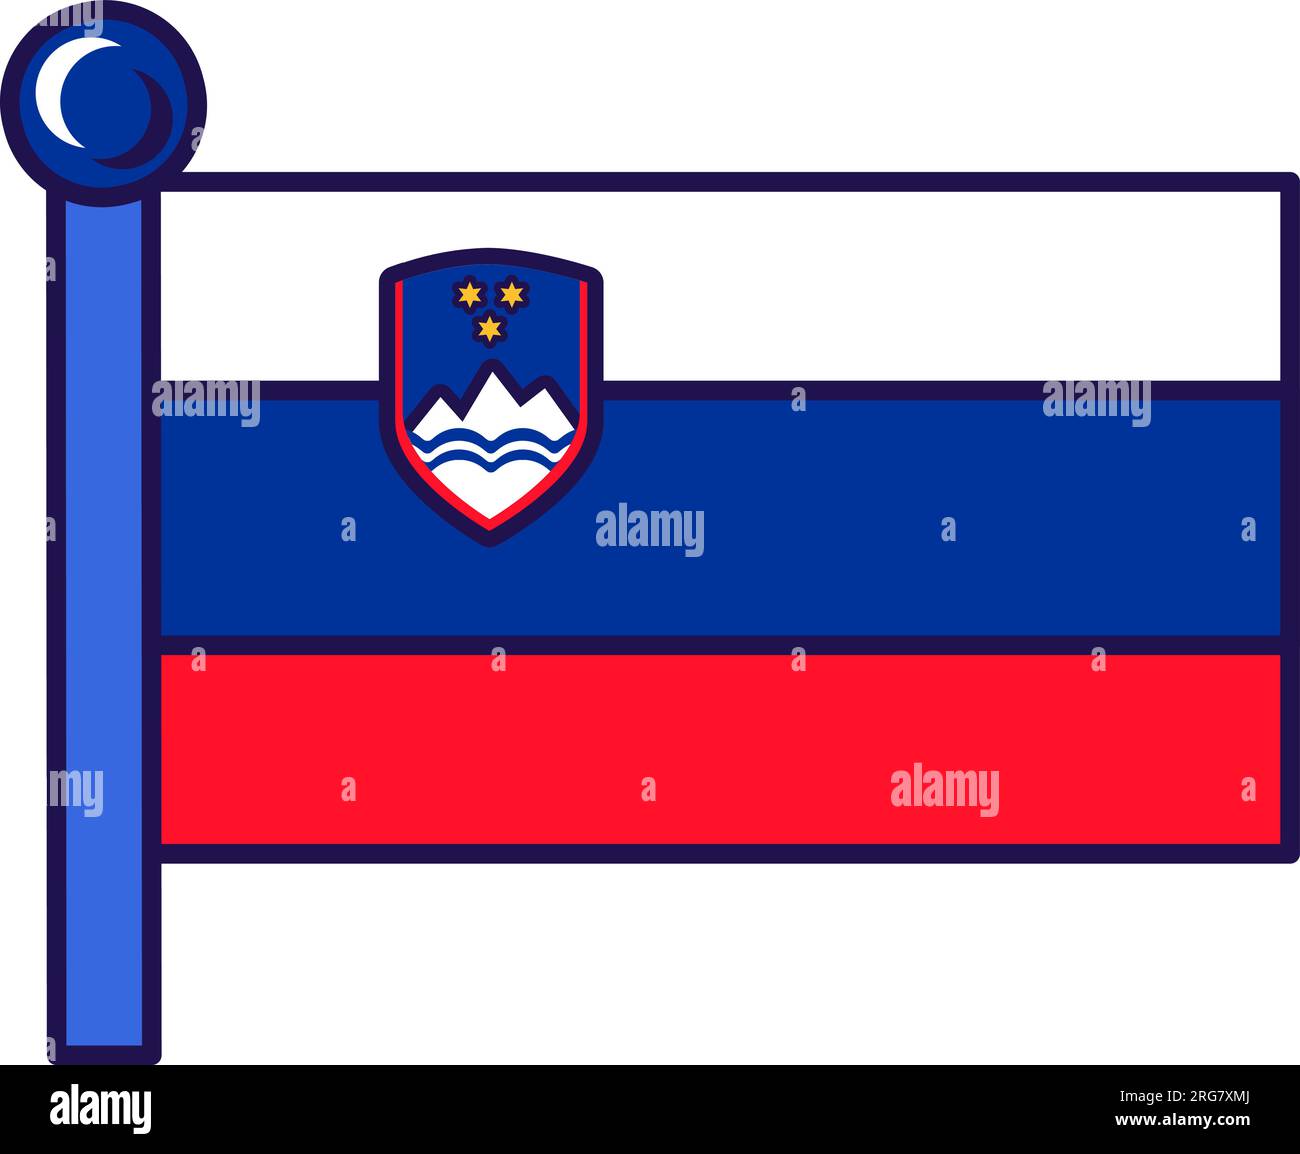 Slowenische Landesflagge auf Flaggenmast für die Registrierung der feierlichen Veranstaltung, Treffen mit ausländischen Gästen. Offizielle Flagge Sloweniens auf der Pole der teilnehmenden Staaten. Si Stock Vektor